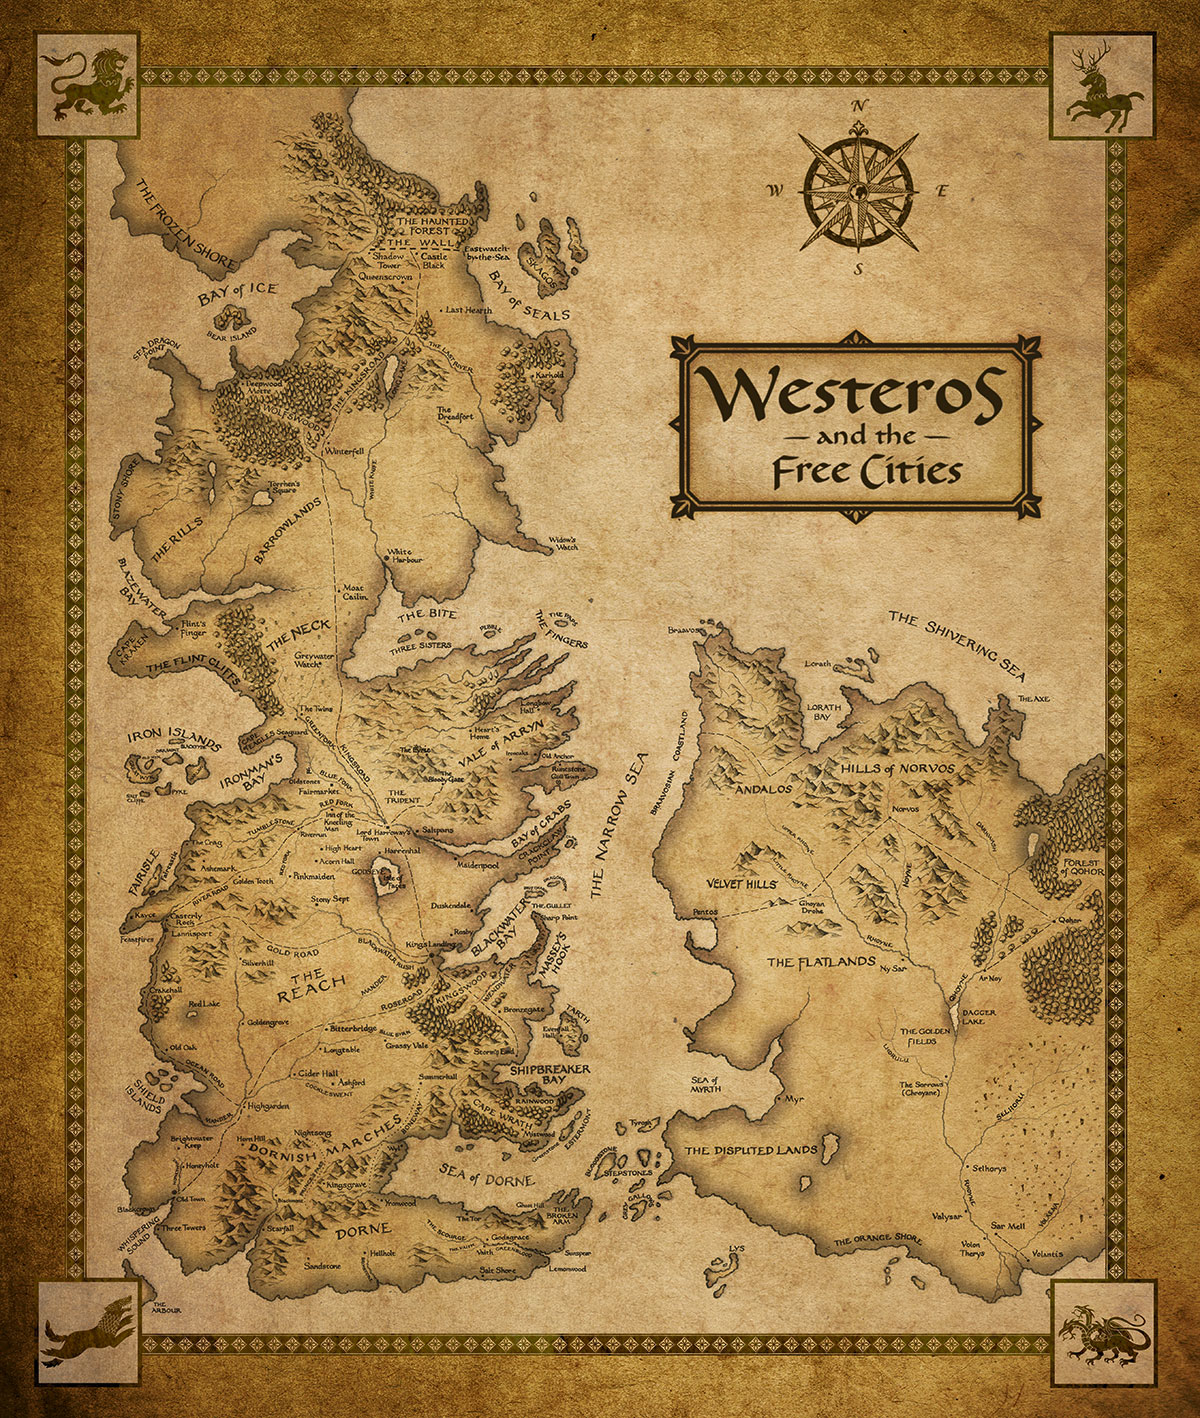 Westeros-and-Essos-new-map.jpg